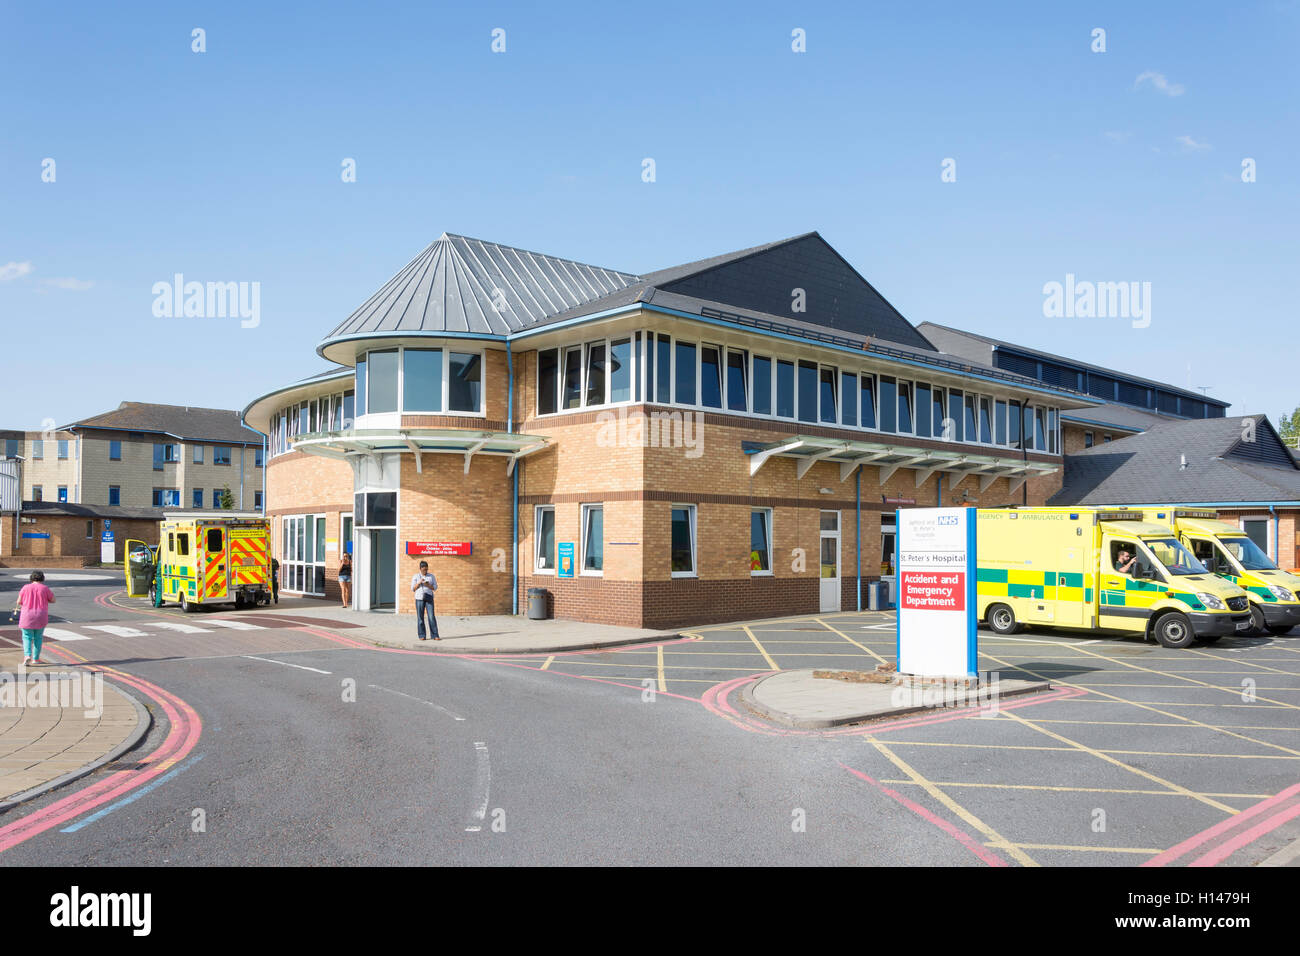 Service des urgences, l'Hôpital St Peter, route, Lyne, Surrey, Angleterre, Royaume-Uni Banque D'Images